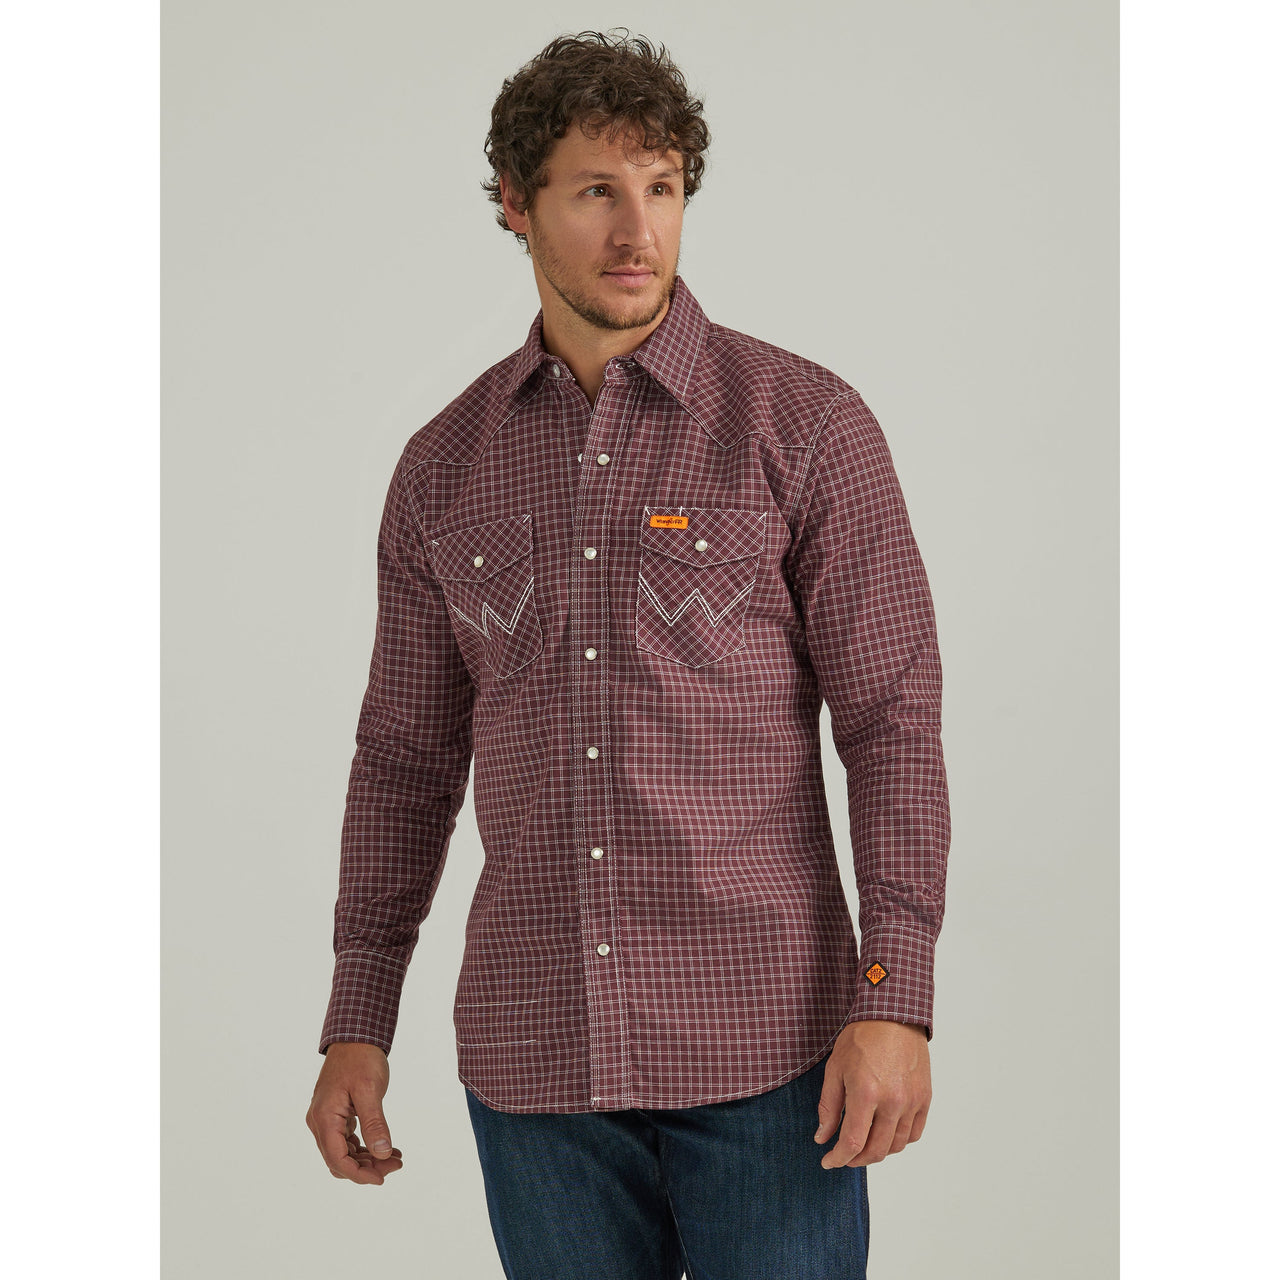 Wrangler Men's Flame Resistant Long Sleeve Snap Work Shirt - Burgundy